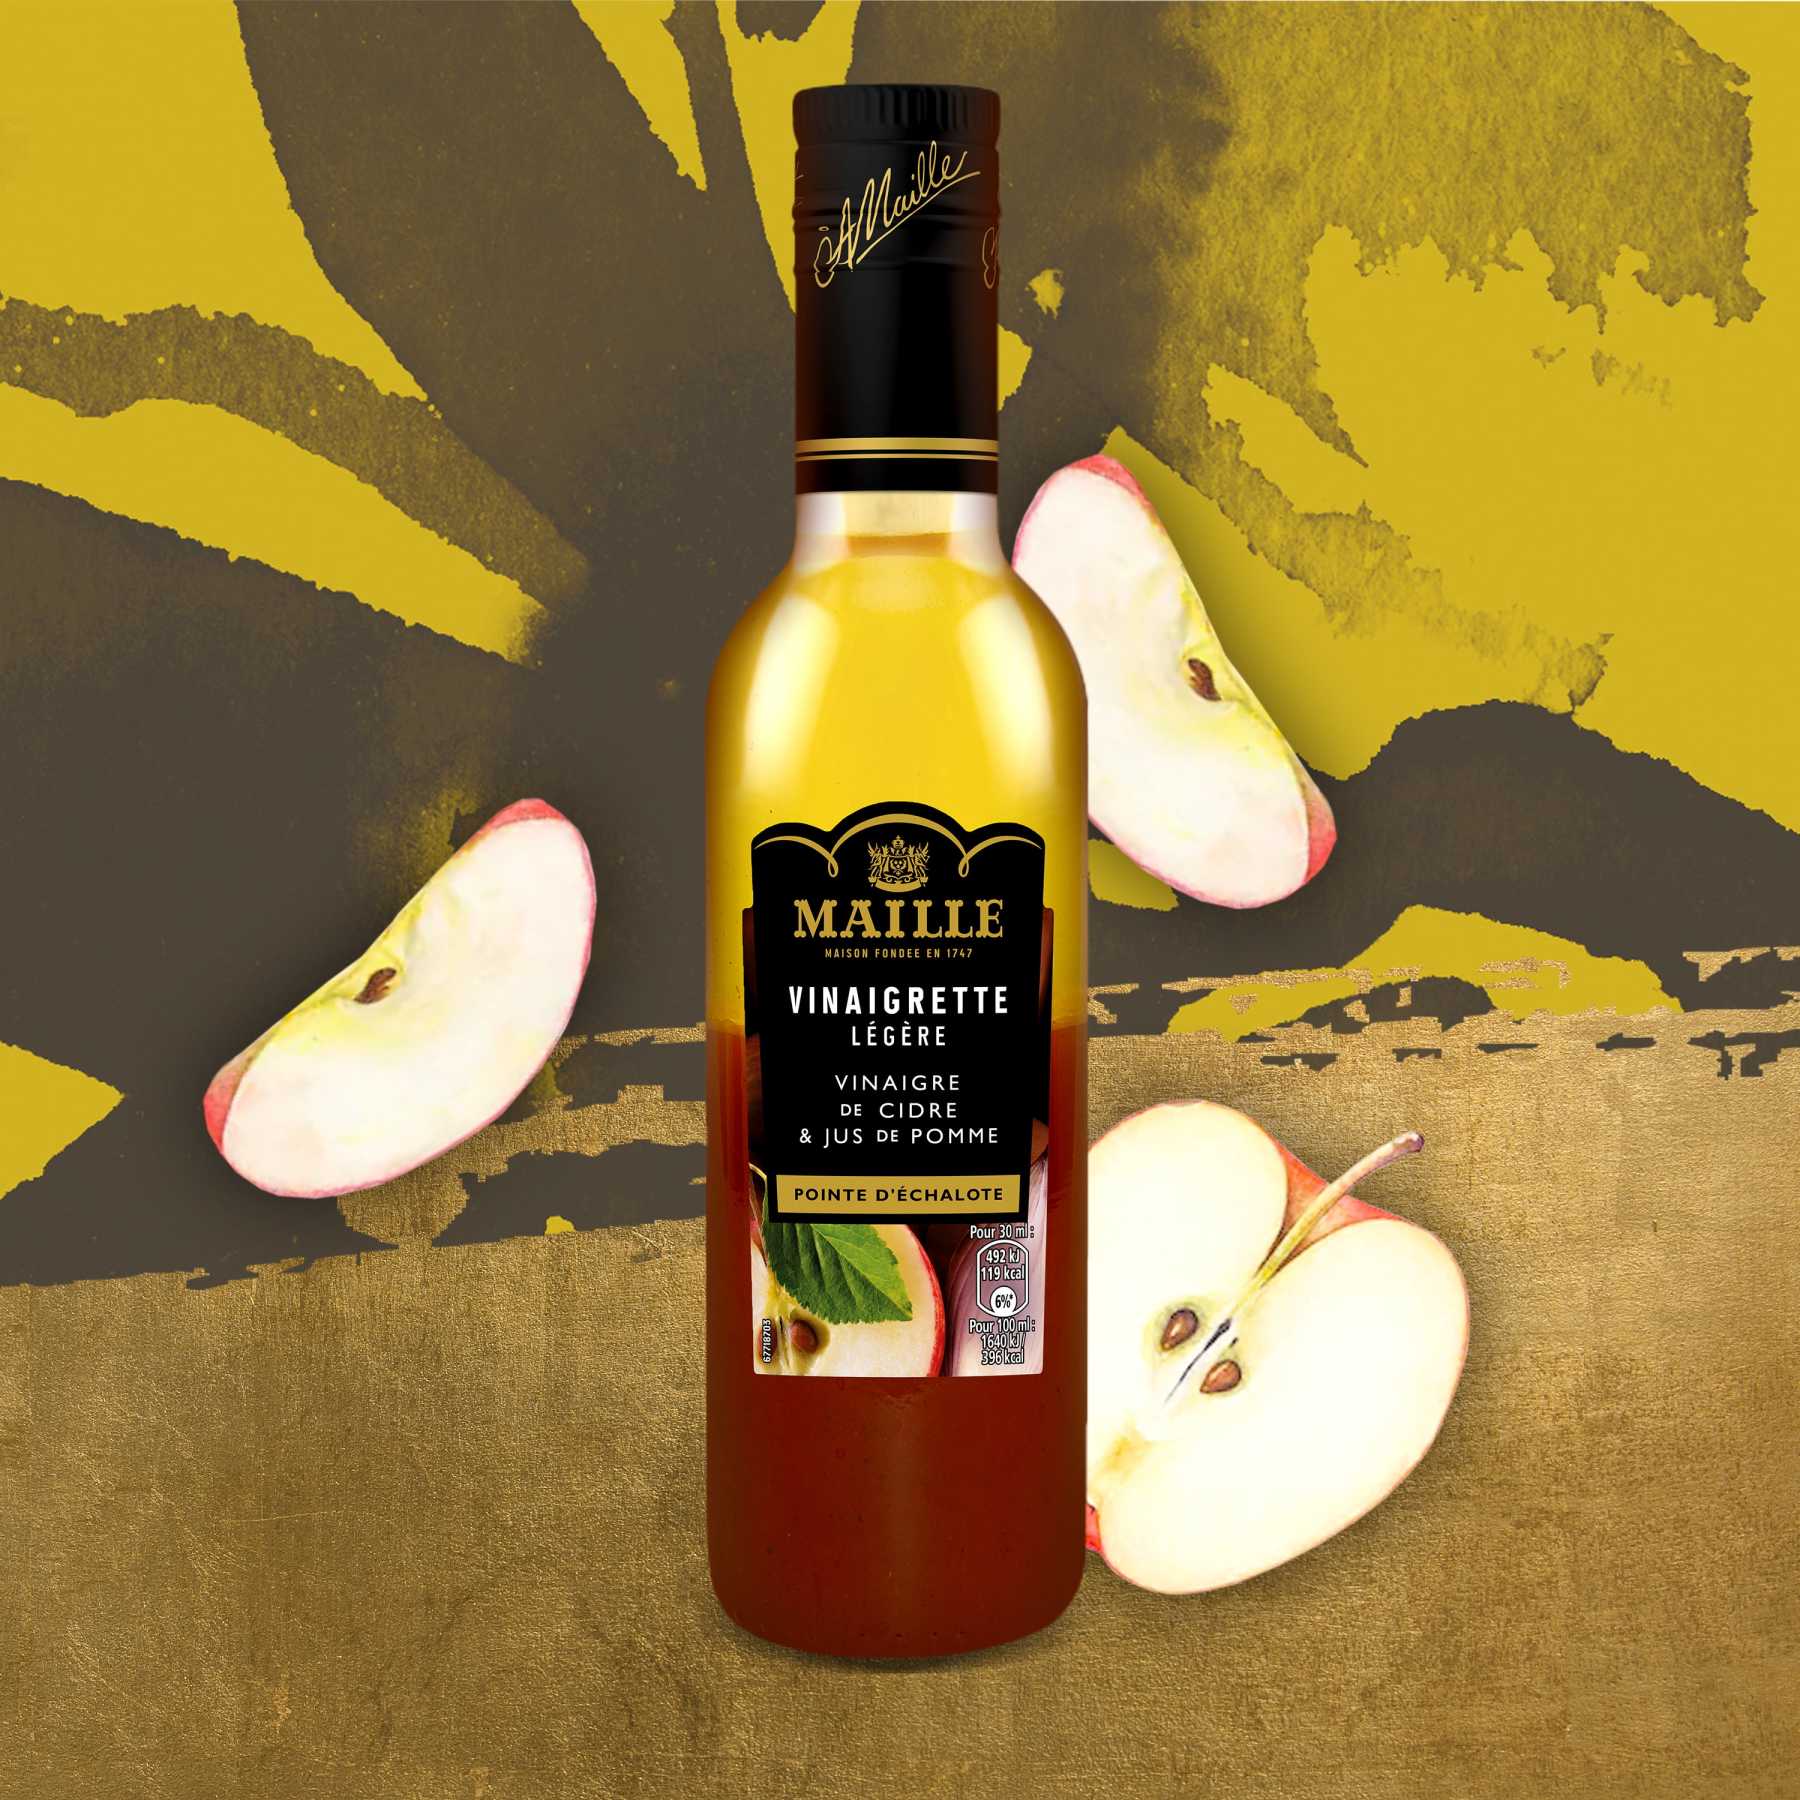 Maille - Vinaigrette Légère cidre et pomme 36 cl, new visual